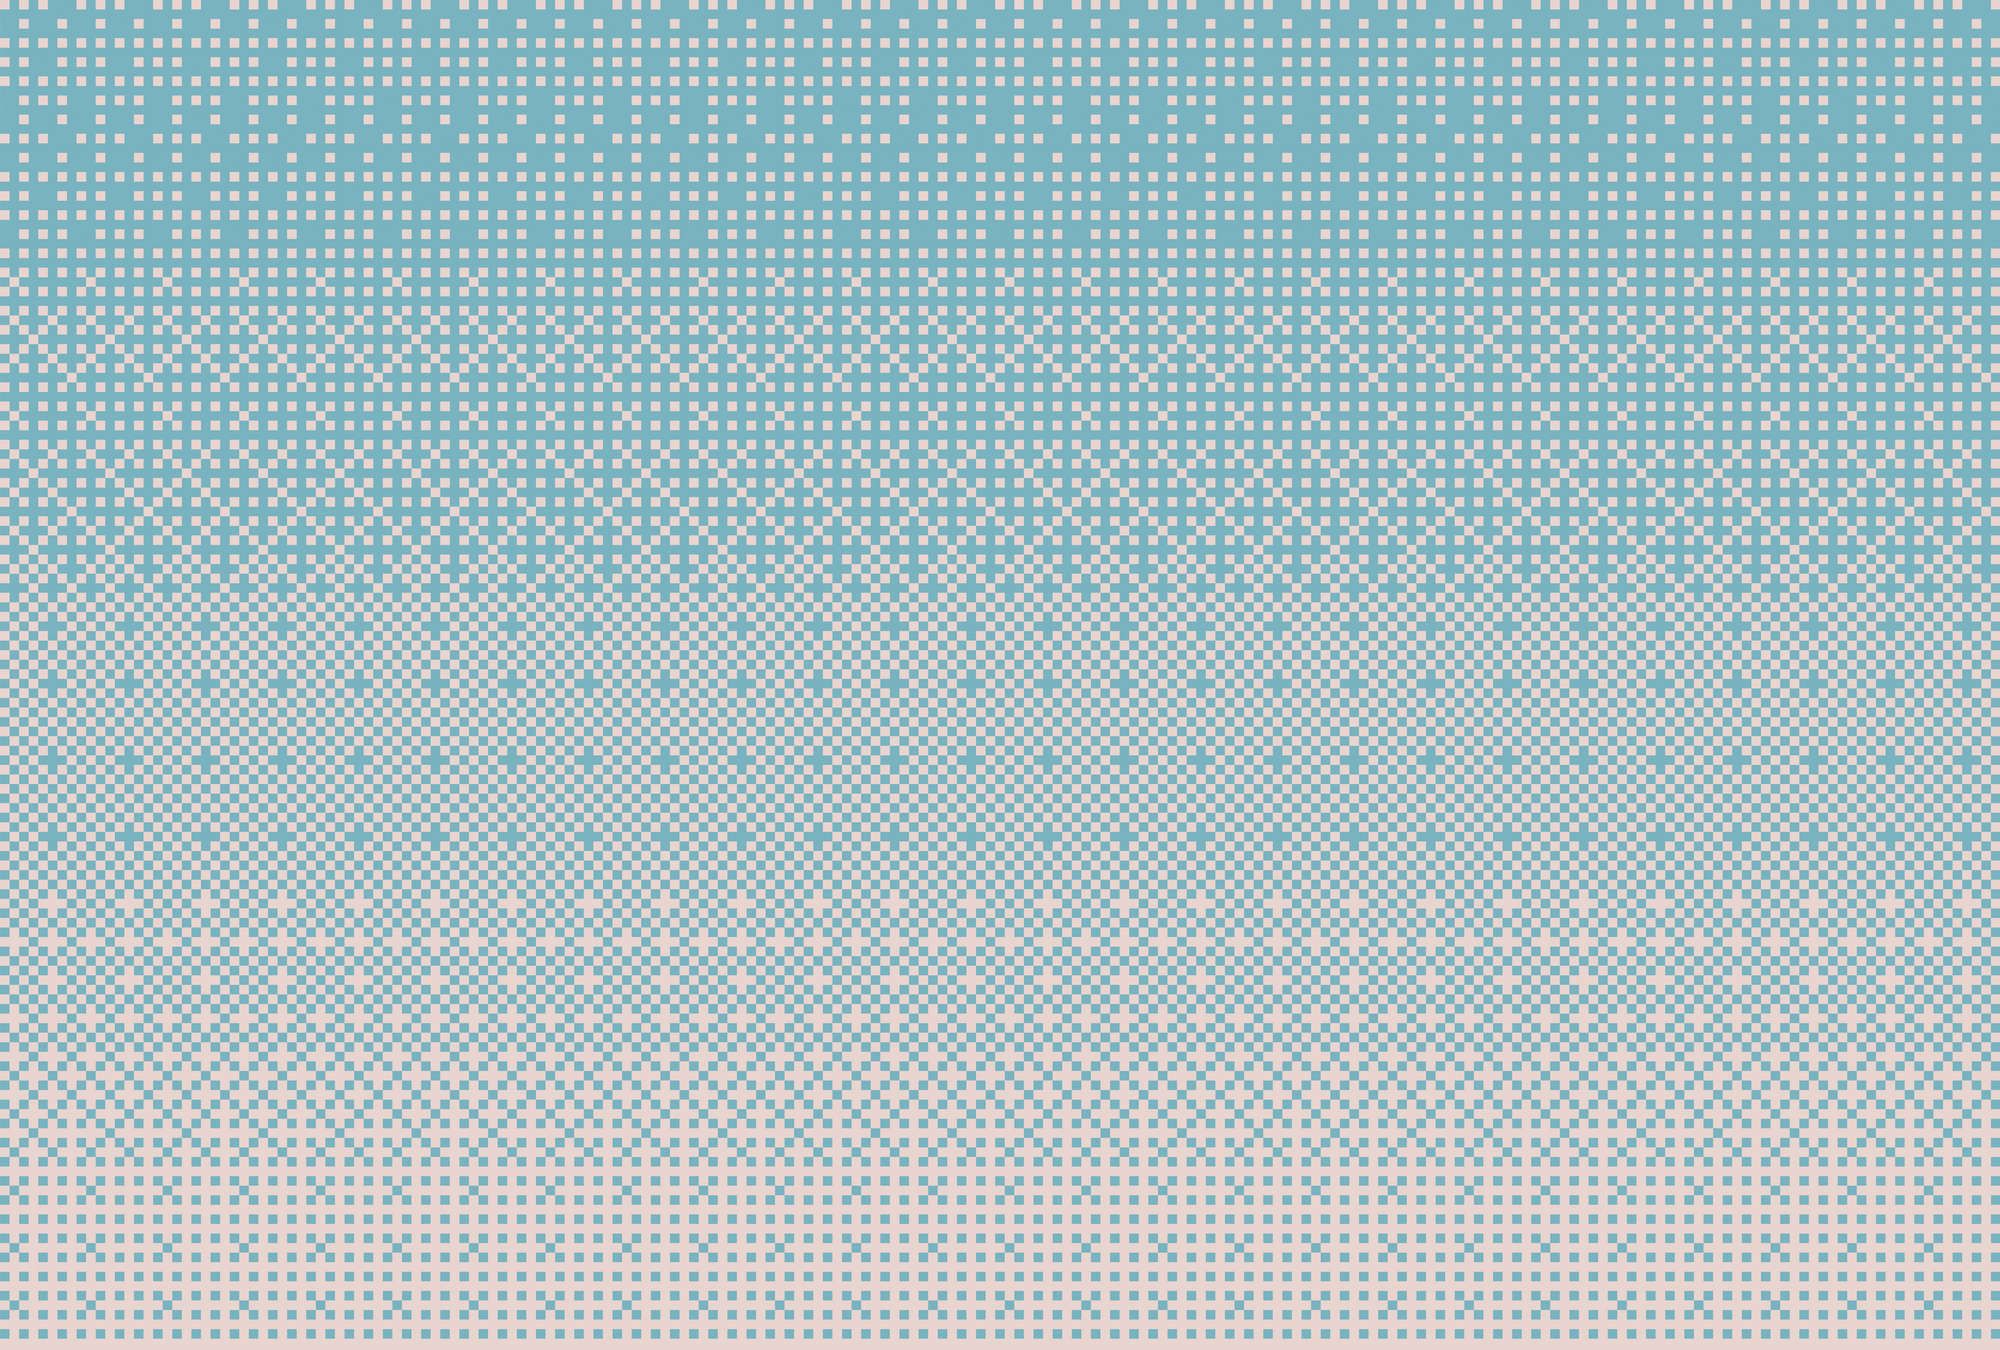             Fotomurali »pixi blu« - Motivo a punto croce in stile pixel - Blu | Materiali non tessuto liscio, leggermente perlato e scintillante
        